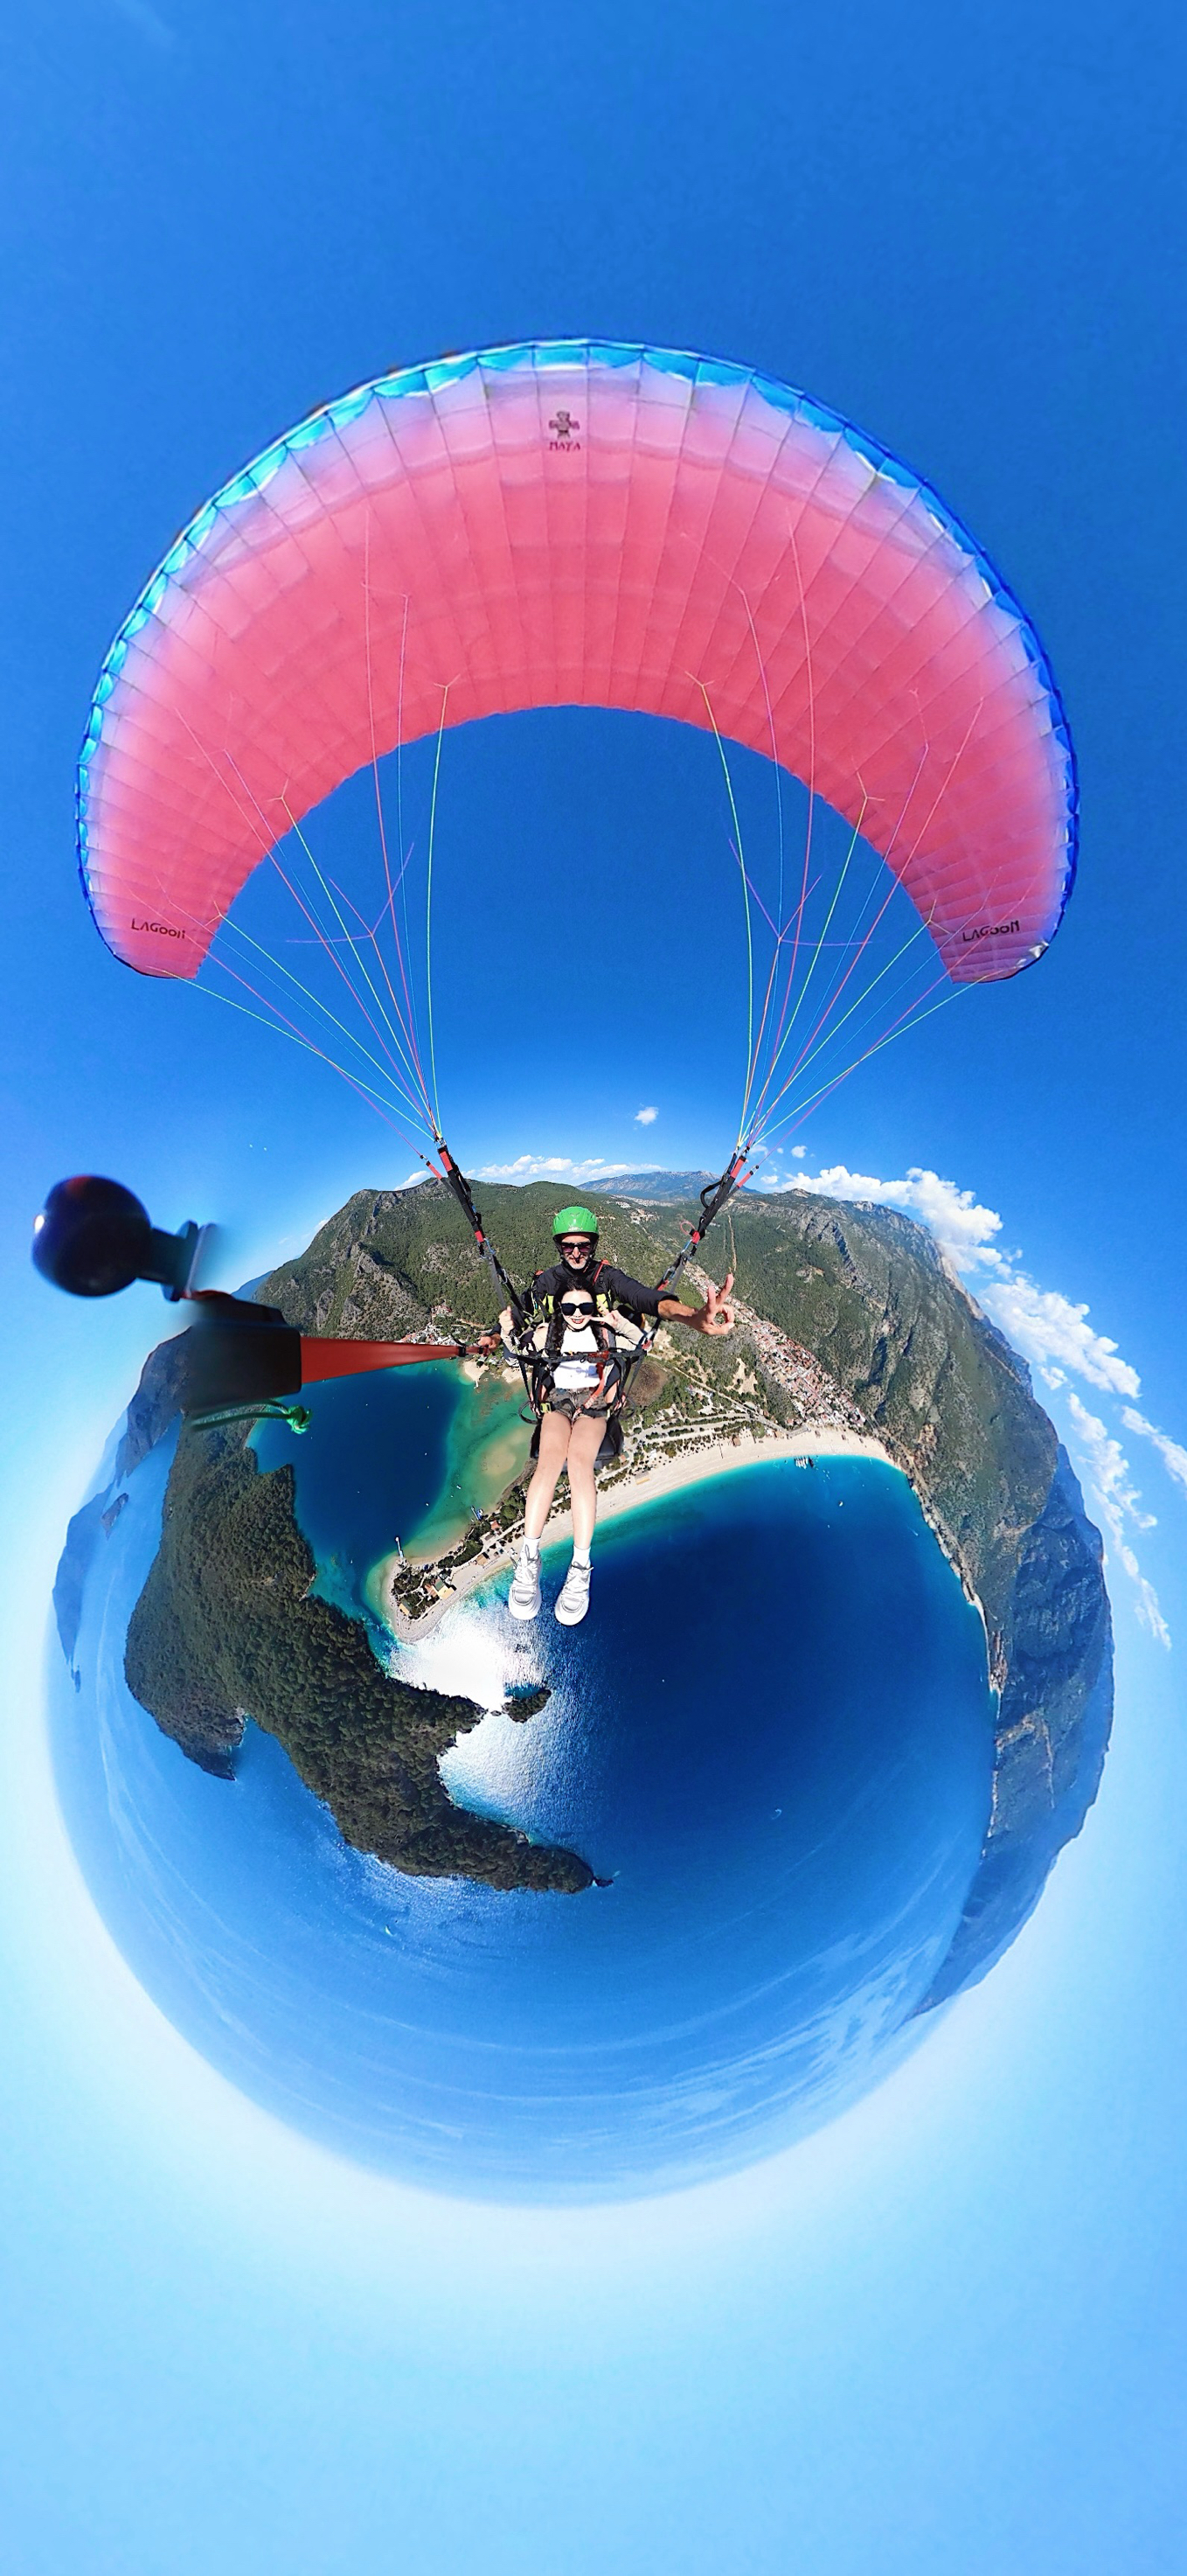 土耳其滑翔伞初体验